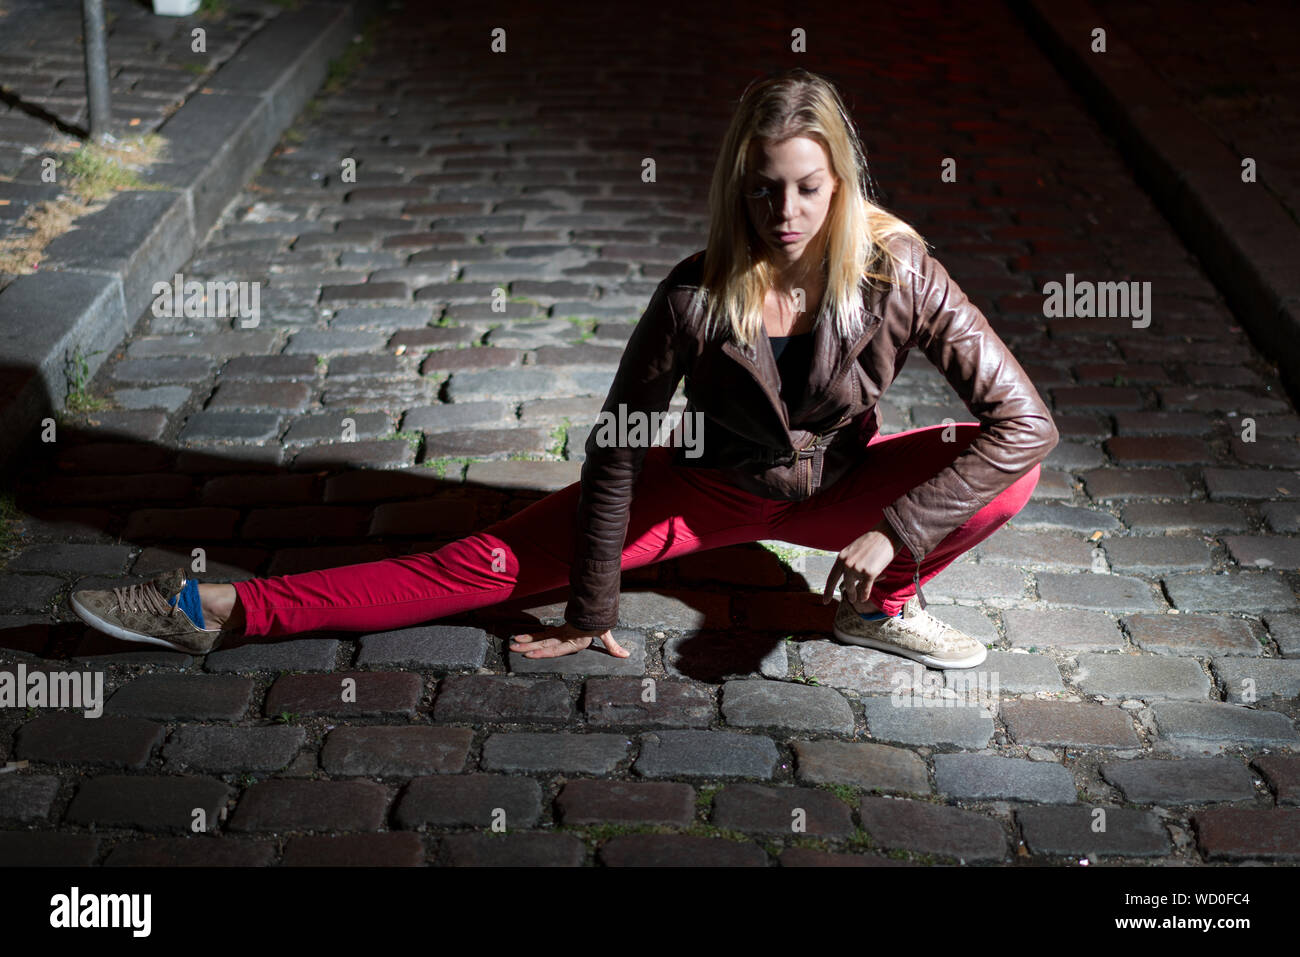 Parigi, Francia - luglio 2, 2017: giovane donna bionda sta facendo ginnastica in notturna su strada nel centro della città di Parigi Foto Stock